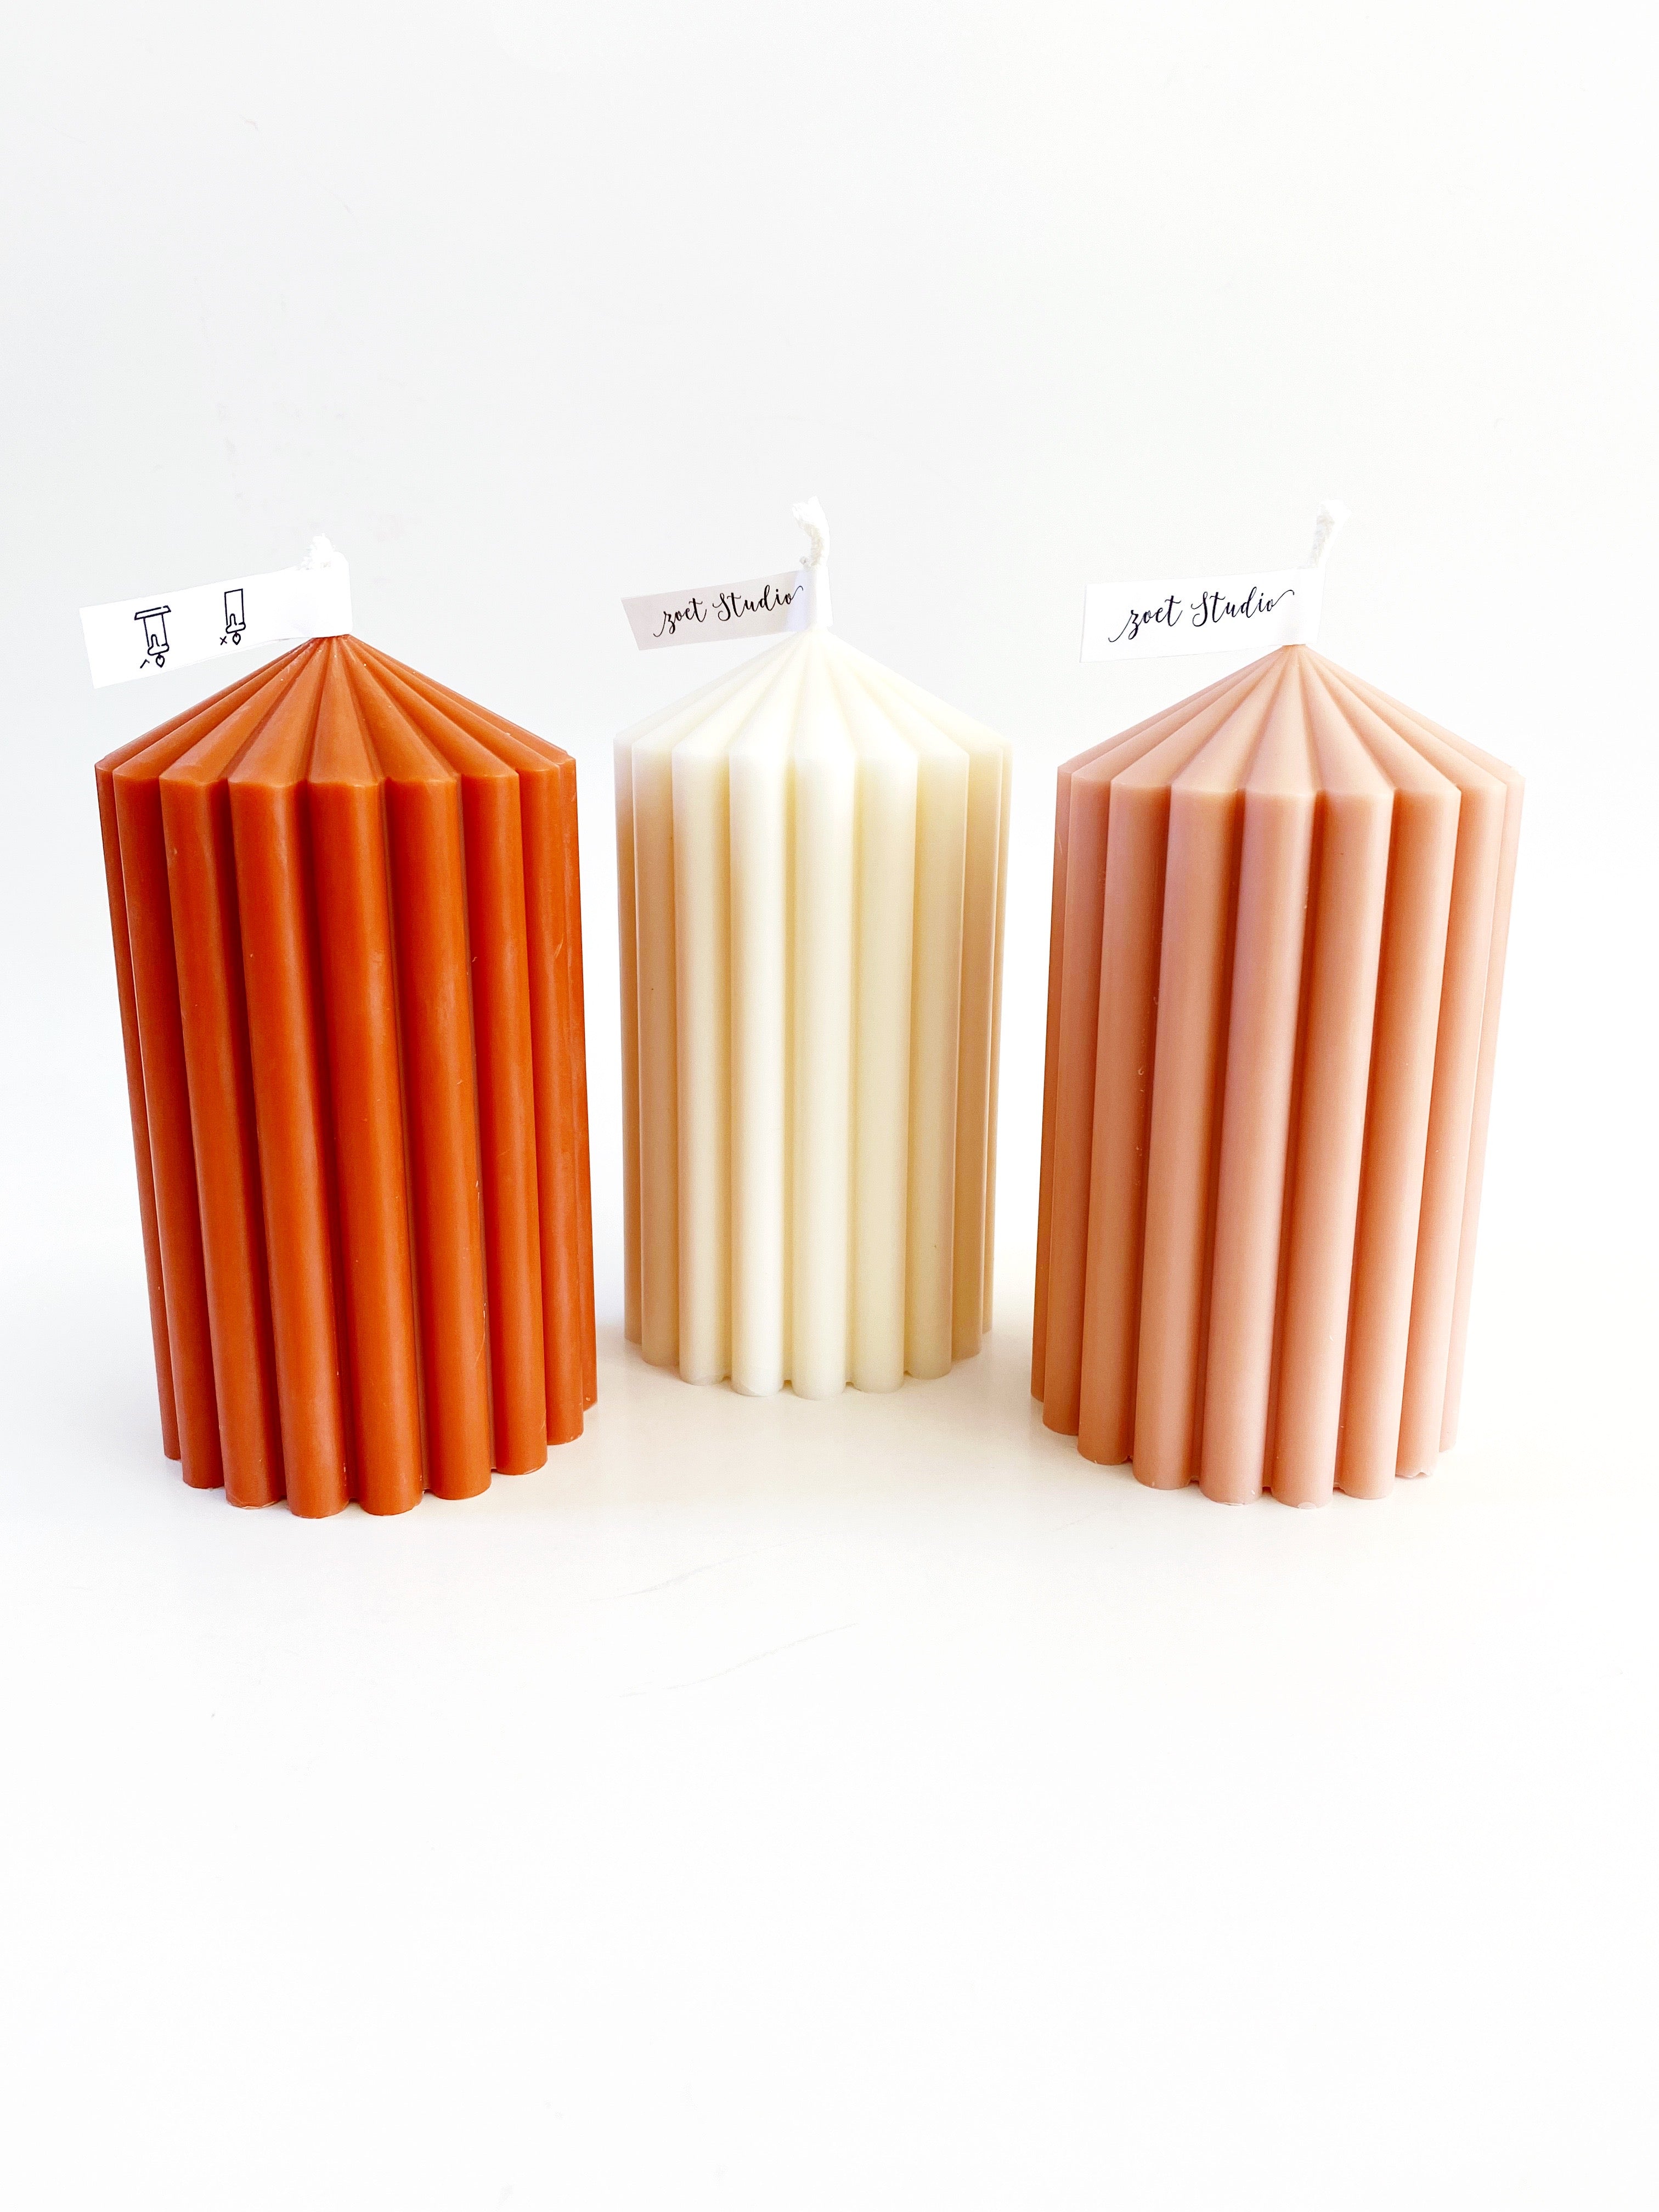 Small Ribbed Pillar Candles | Soy Wax